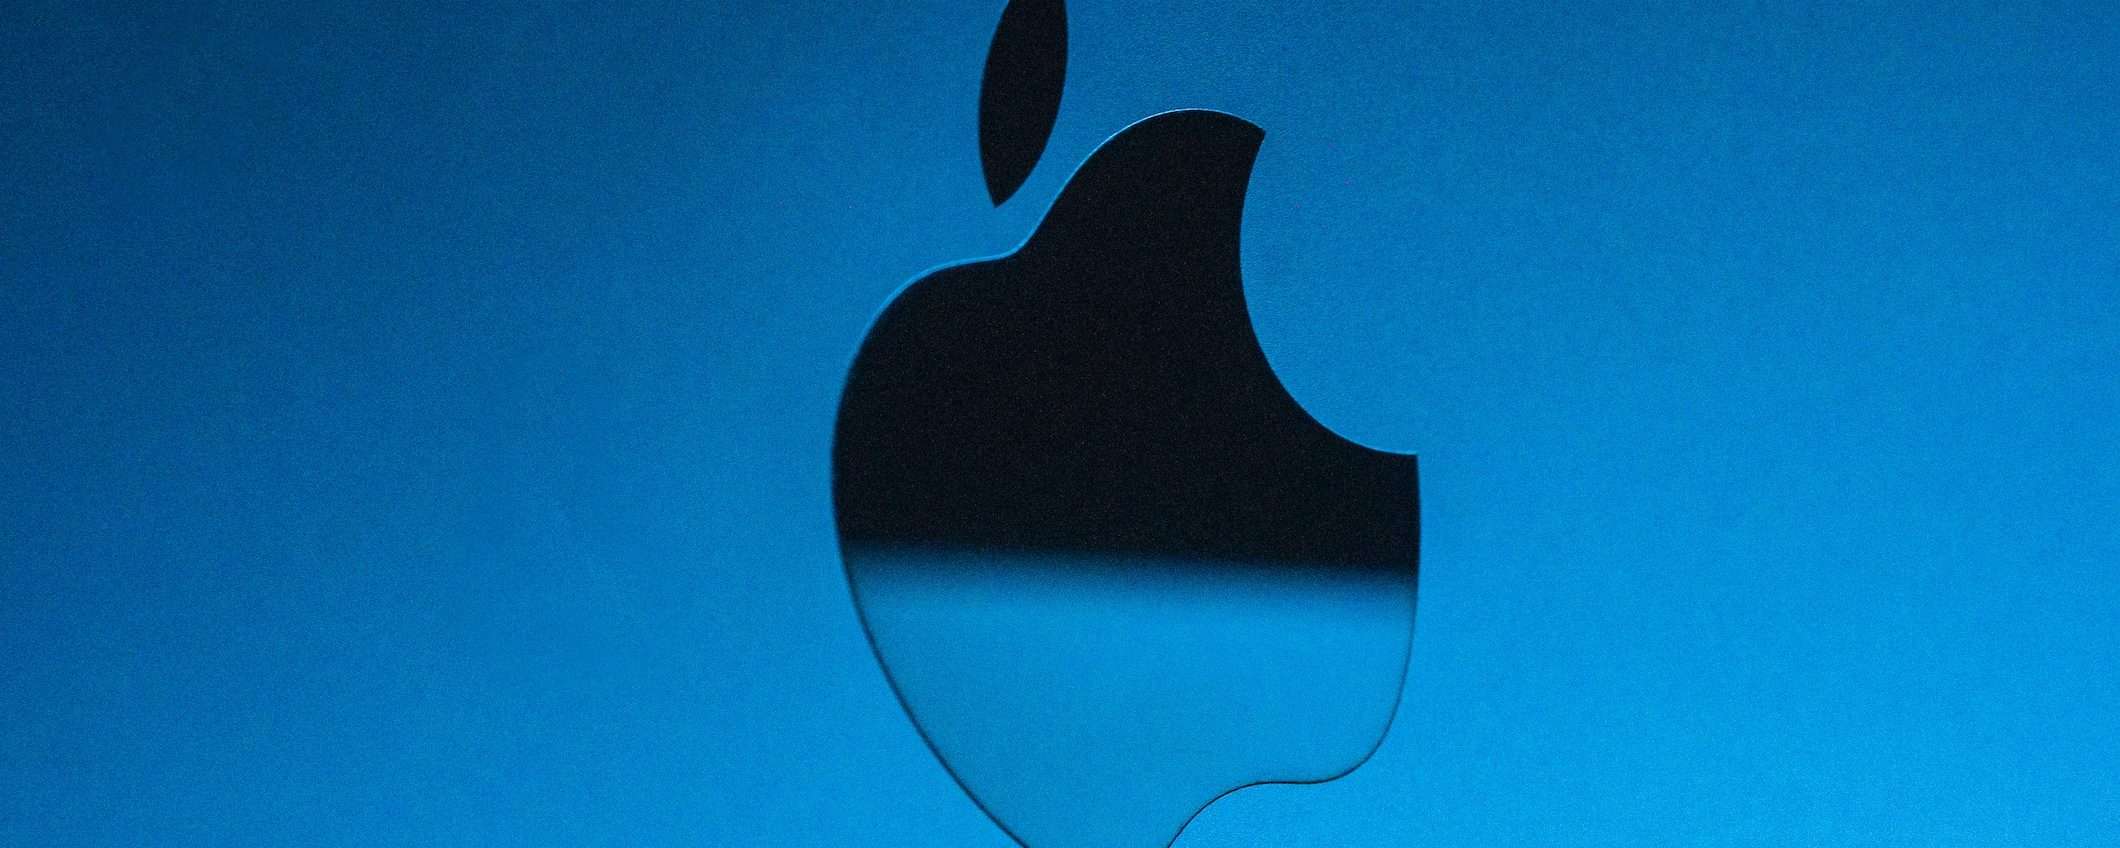 Apple: nuovo iMac Pro da 27″ in arrivo nel 2022?